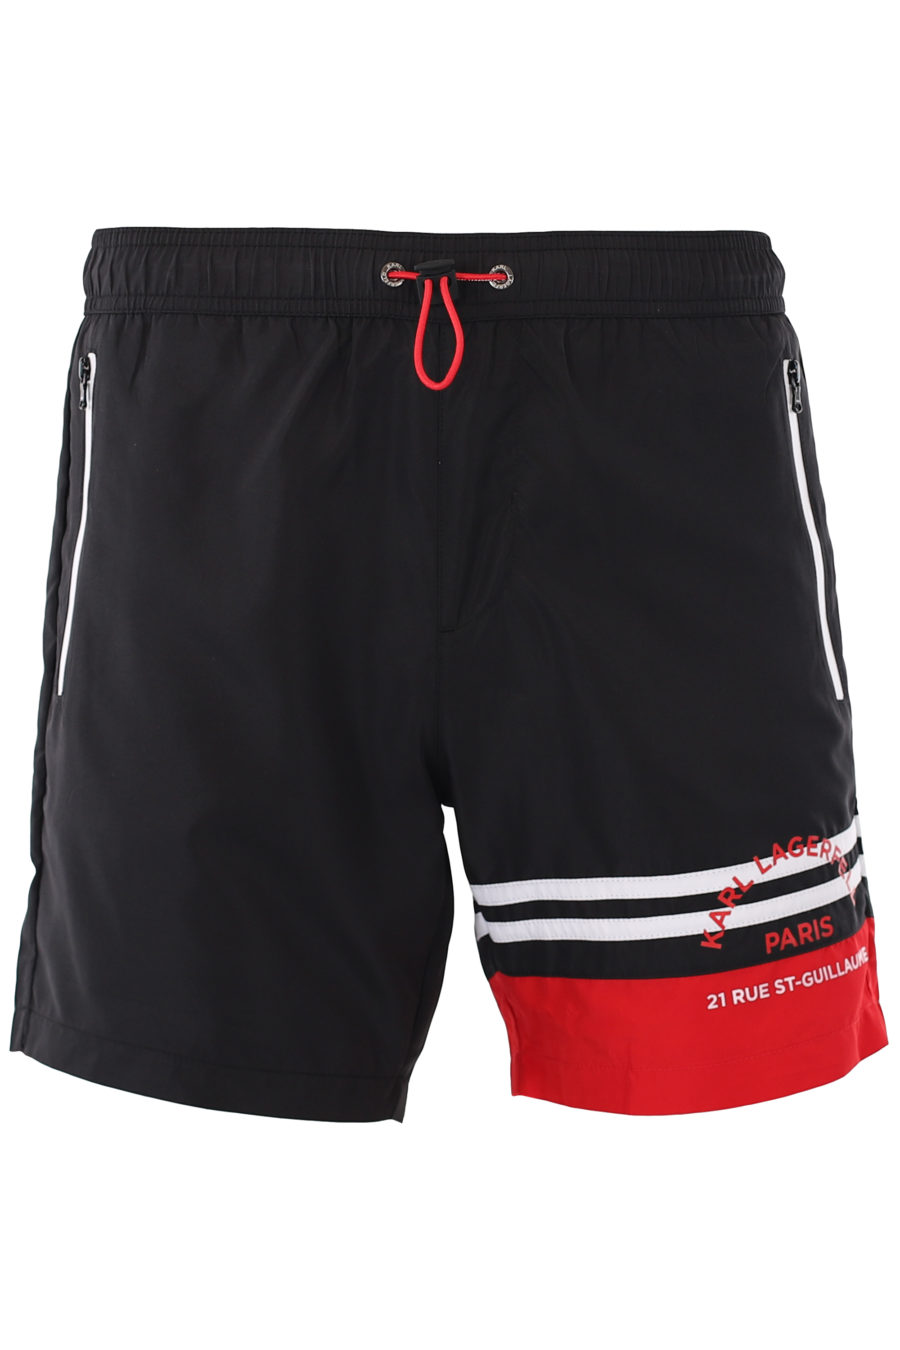 Bañador negro con bolsillos y detalles rojos - IMG 9259